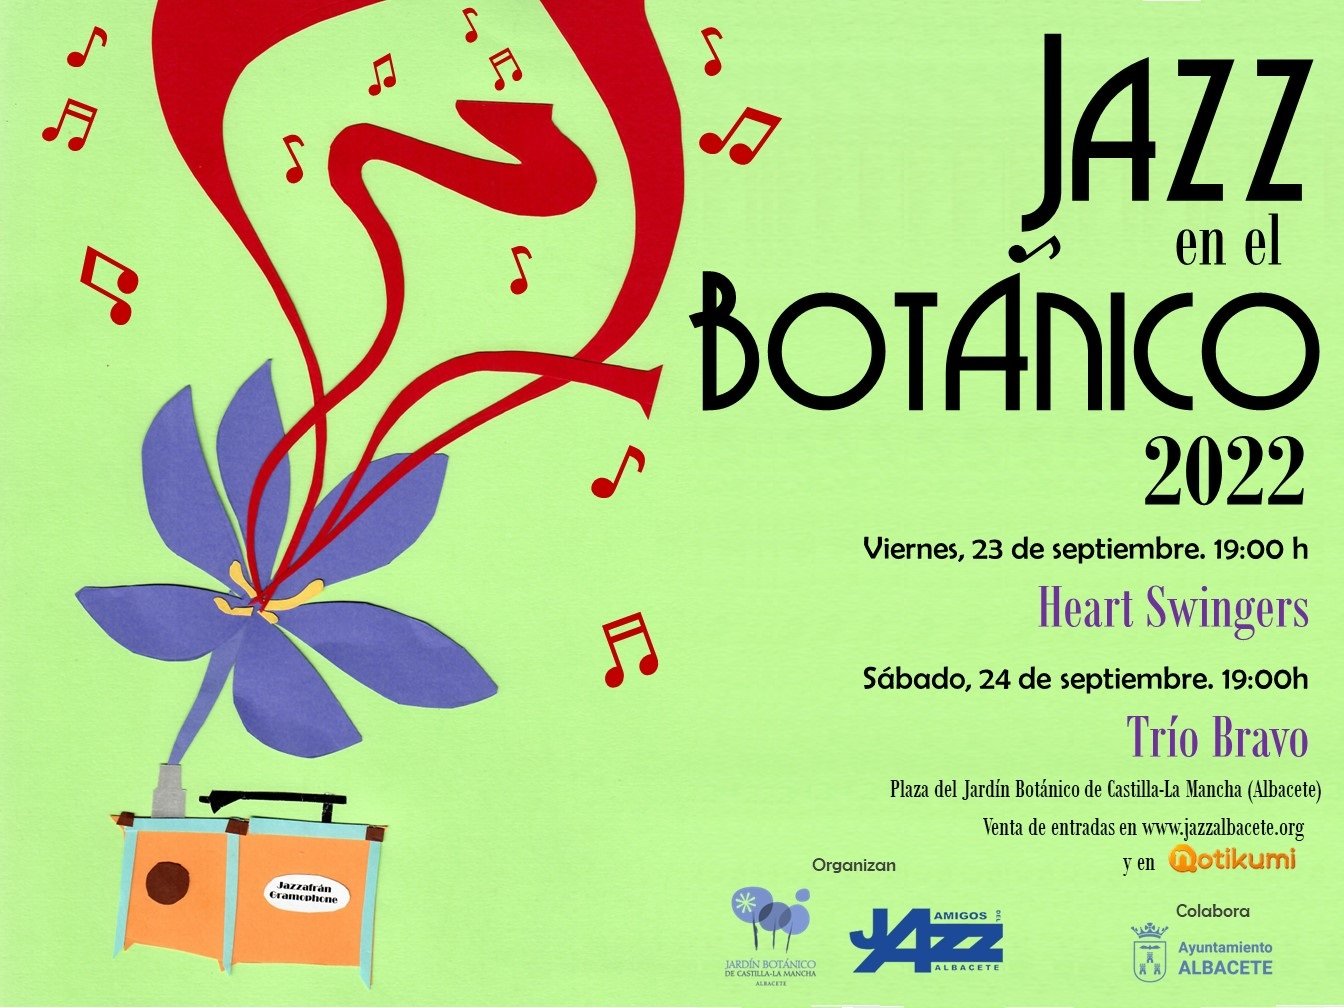 El jazz retornará este viernes y sábado al Jardín Botánico de C-LM en Albacete con Heart Swingers y Trío Bravo